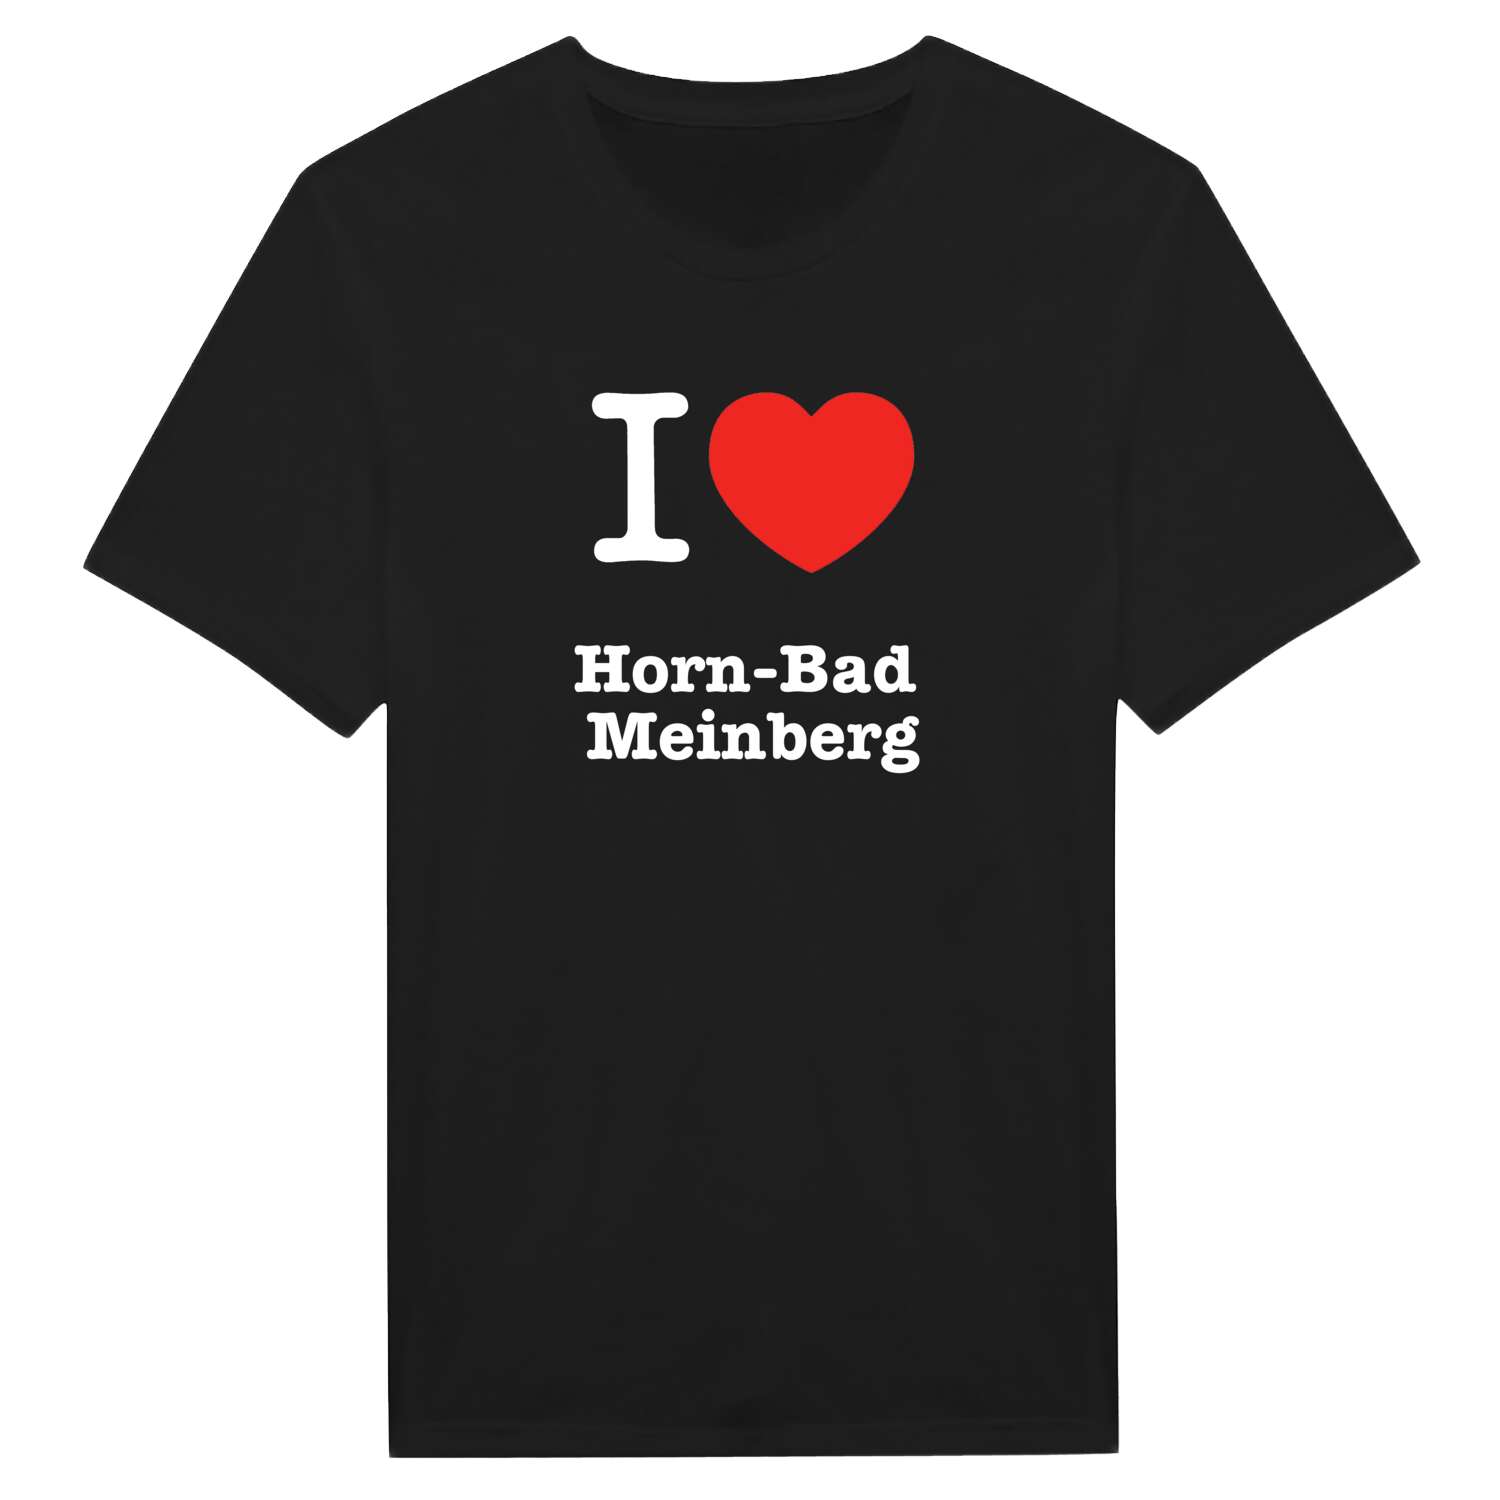 Horn-Bad Meinberg T-Shirt »I love«